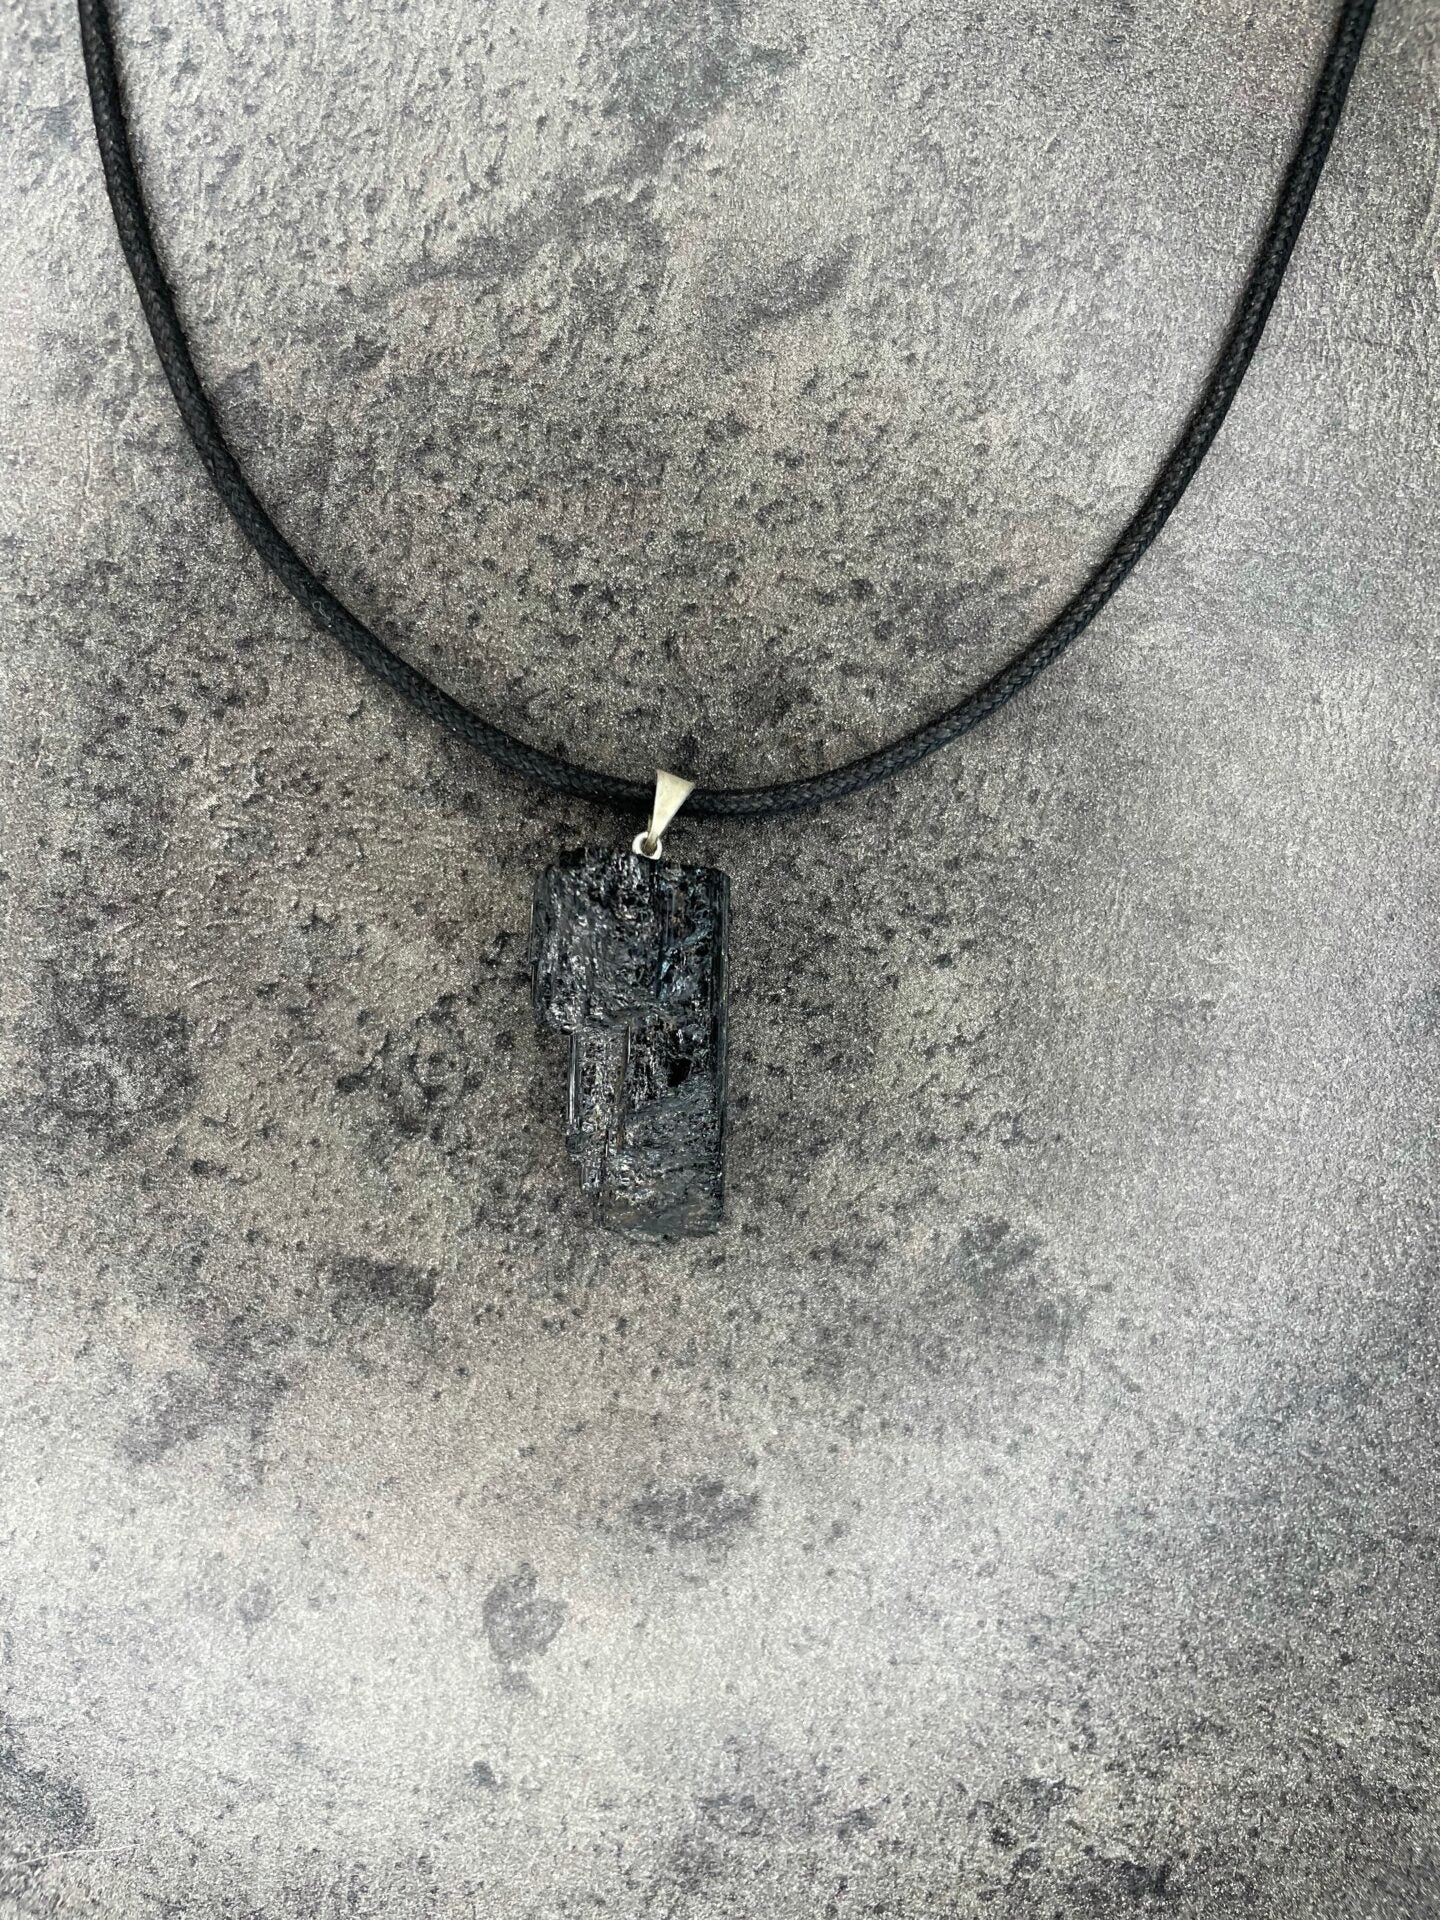 Black tourmaline - Rough necklace pendant